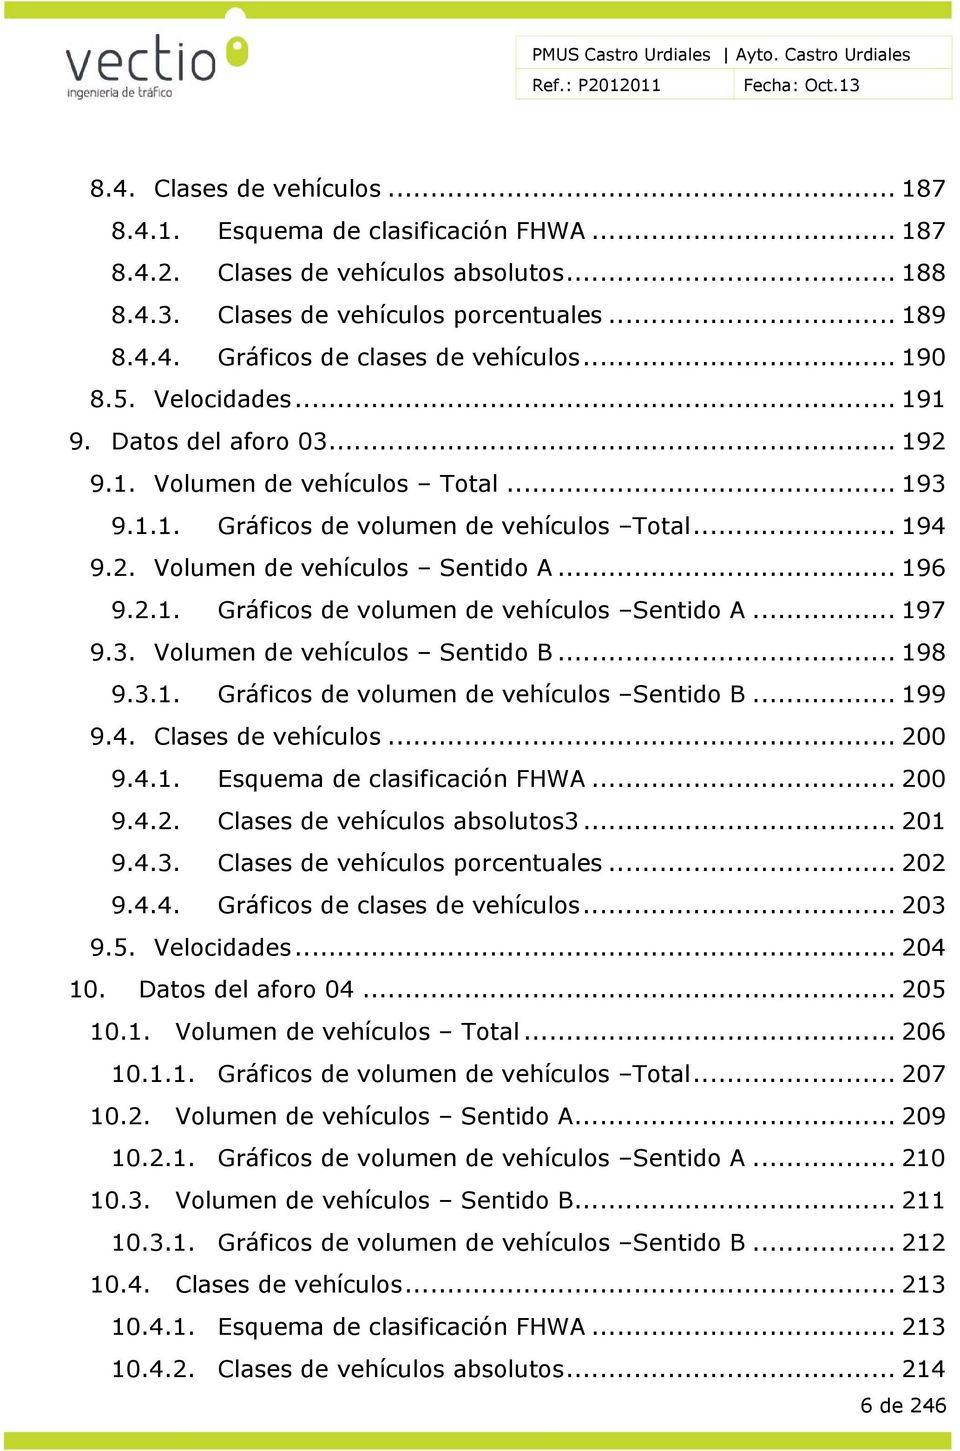 .. 197 9.3. Volumen de vehículos Sentido B... 198 9.3.1. Gráficos de volumen de vehículos Sentido B... 199 9.4. Clases de vehículos... 200 9.4.1. Esquema de clasificación FHWA... 200 9.4.2. Clases de vehículos absolutos3.